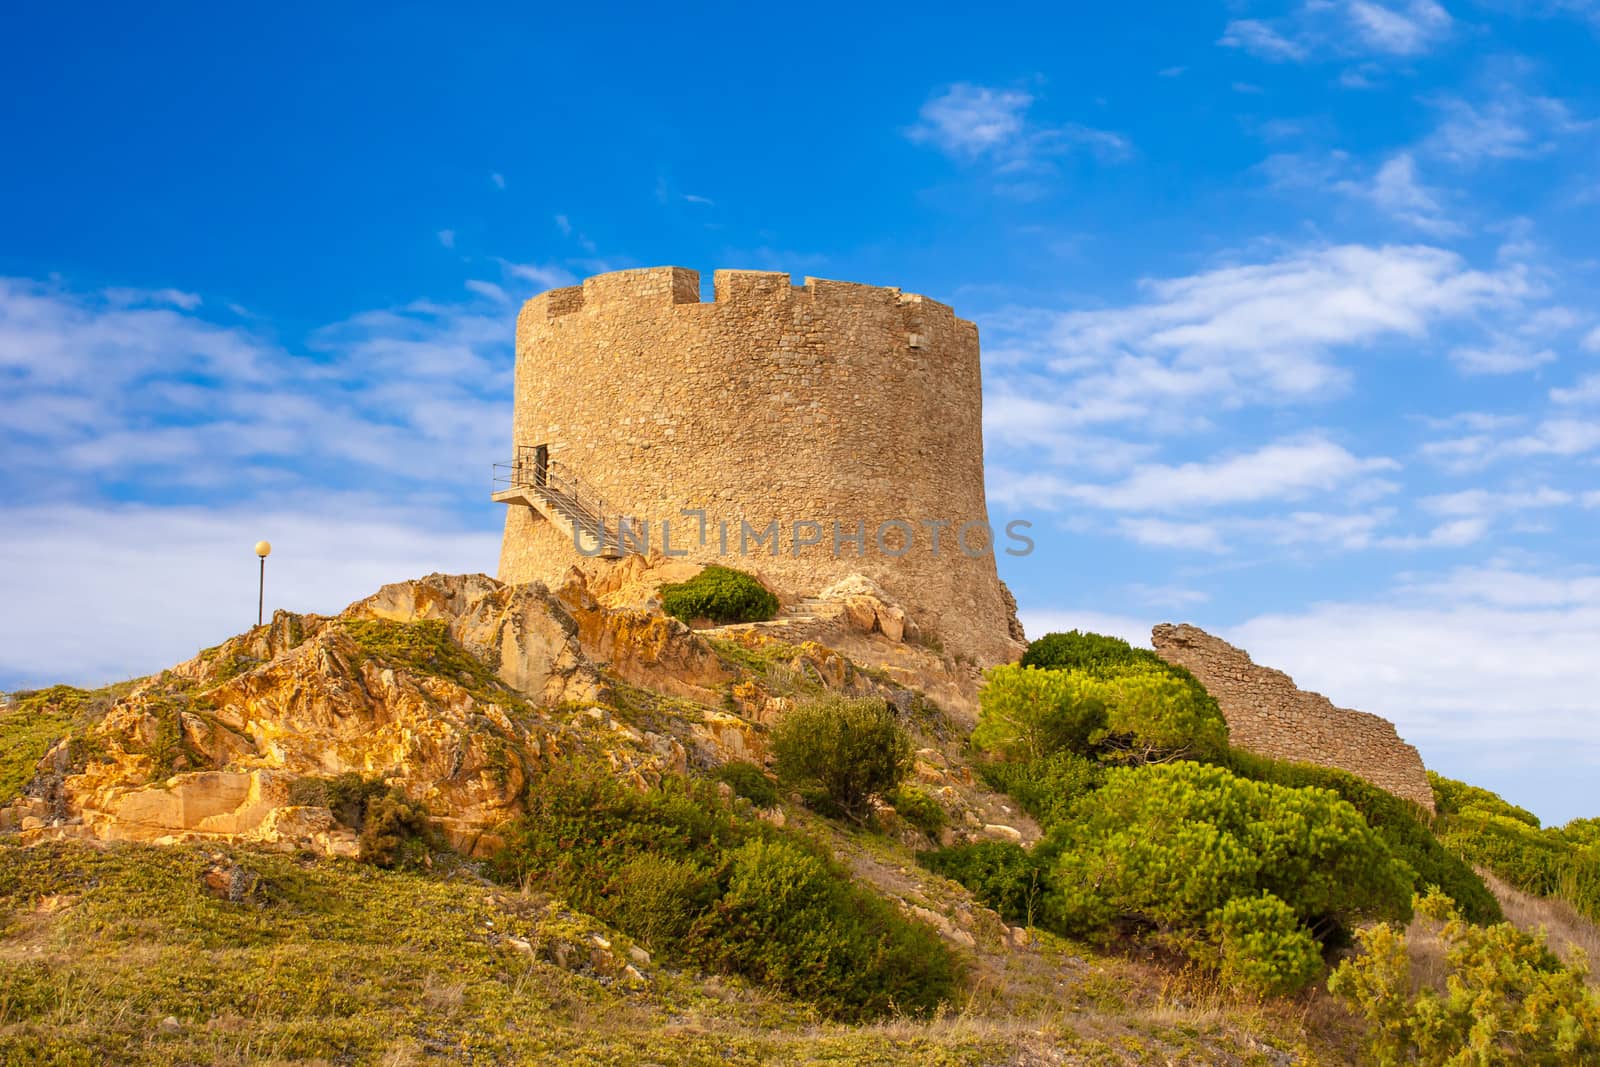 The landmark of the town Santa Teresa di Gallura, Sardinia, Italy